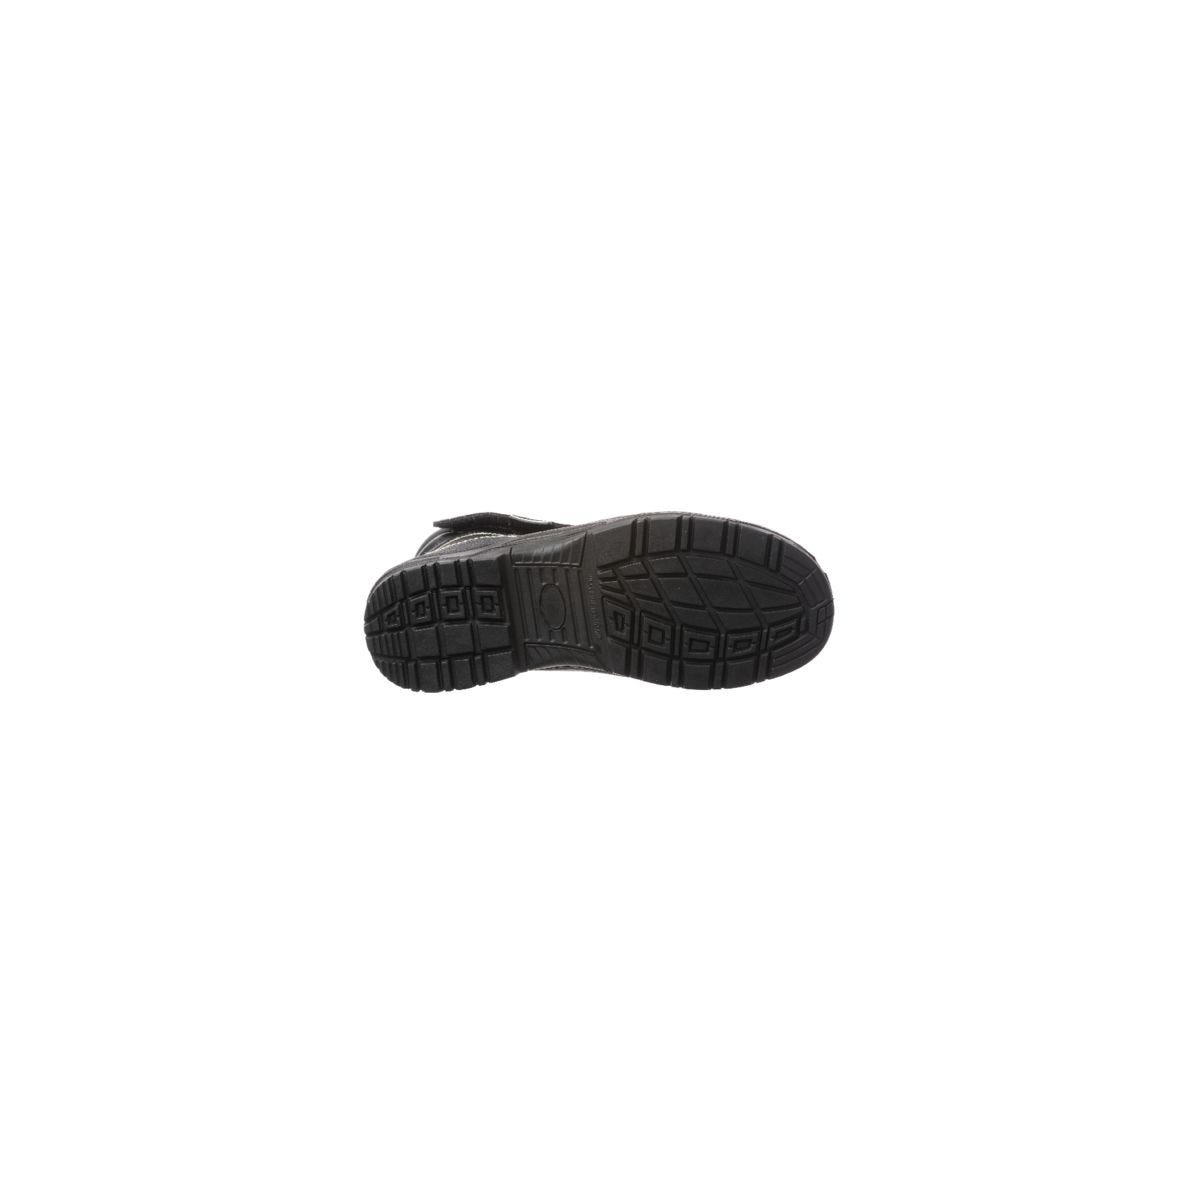 Chaussure de sécurité QUADRUFITE S3 soudeur composite noire - COVERGUARD - Taille 43 1